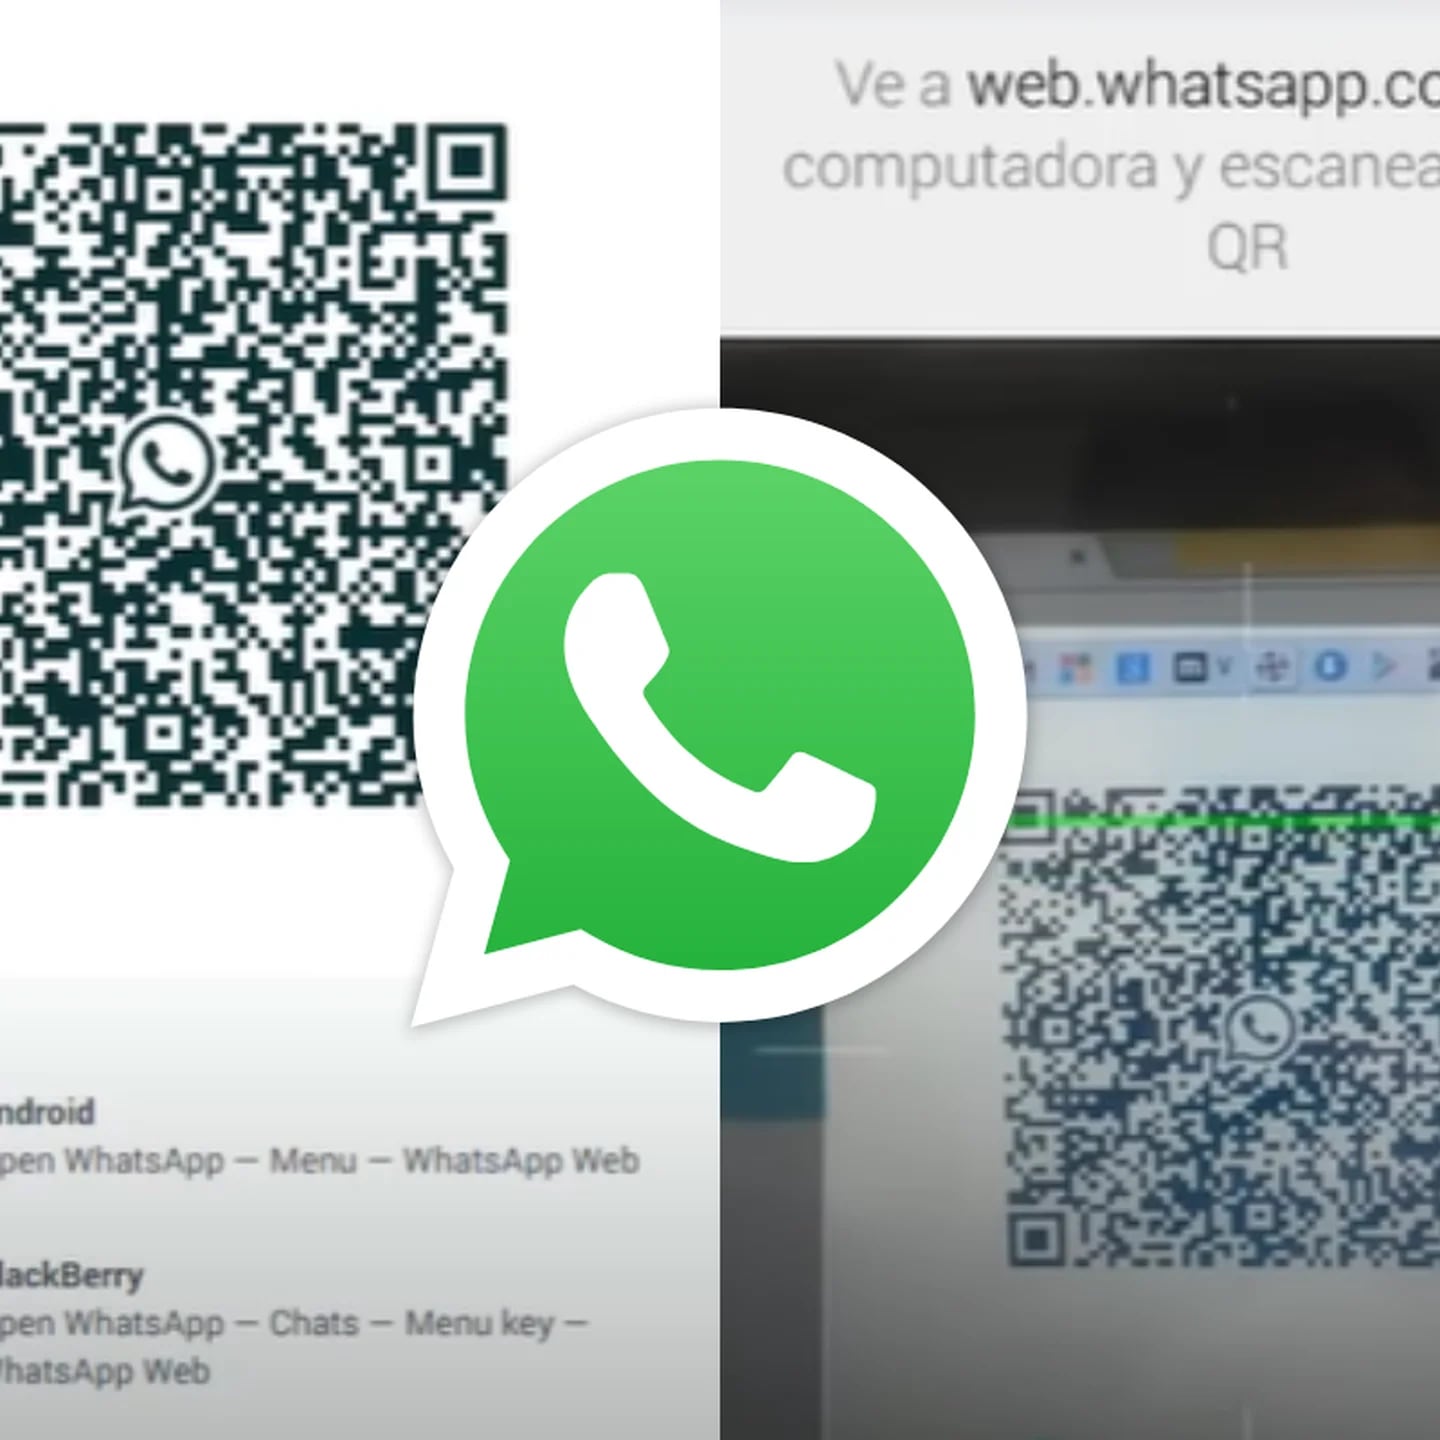 Tchau, QR Code! WhatsApp Web já pode ser acessado com número de